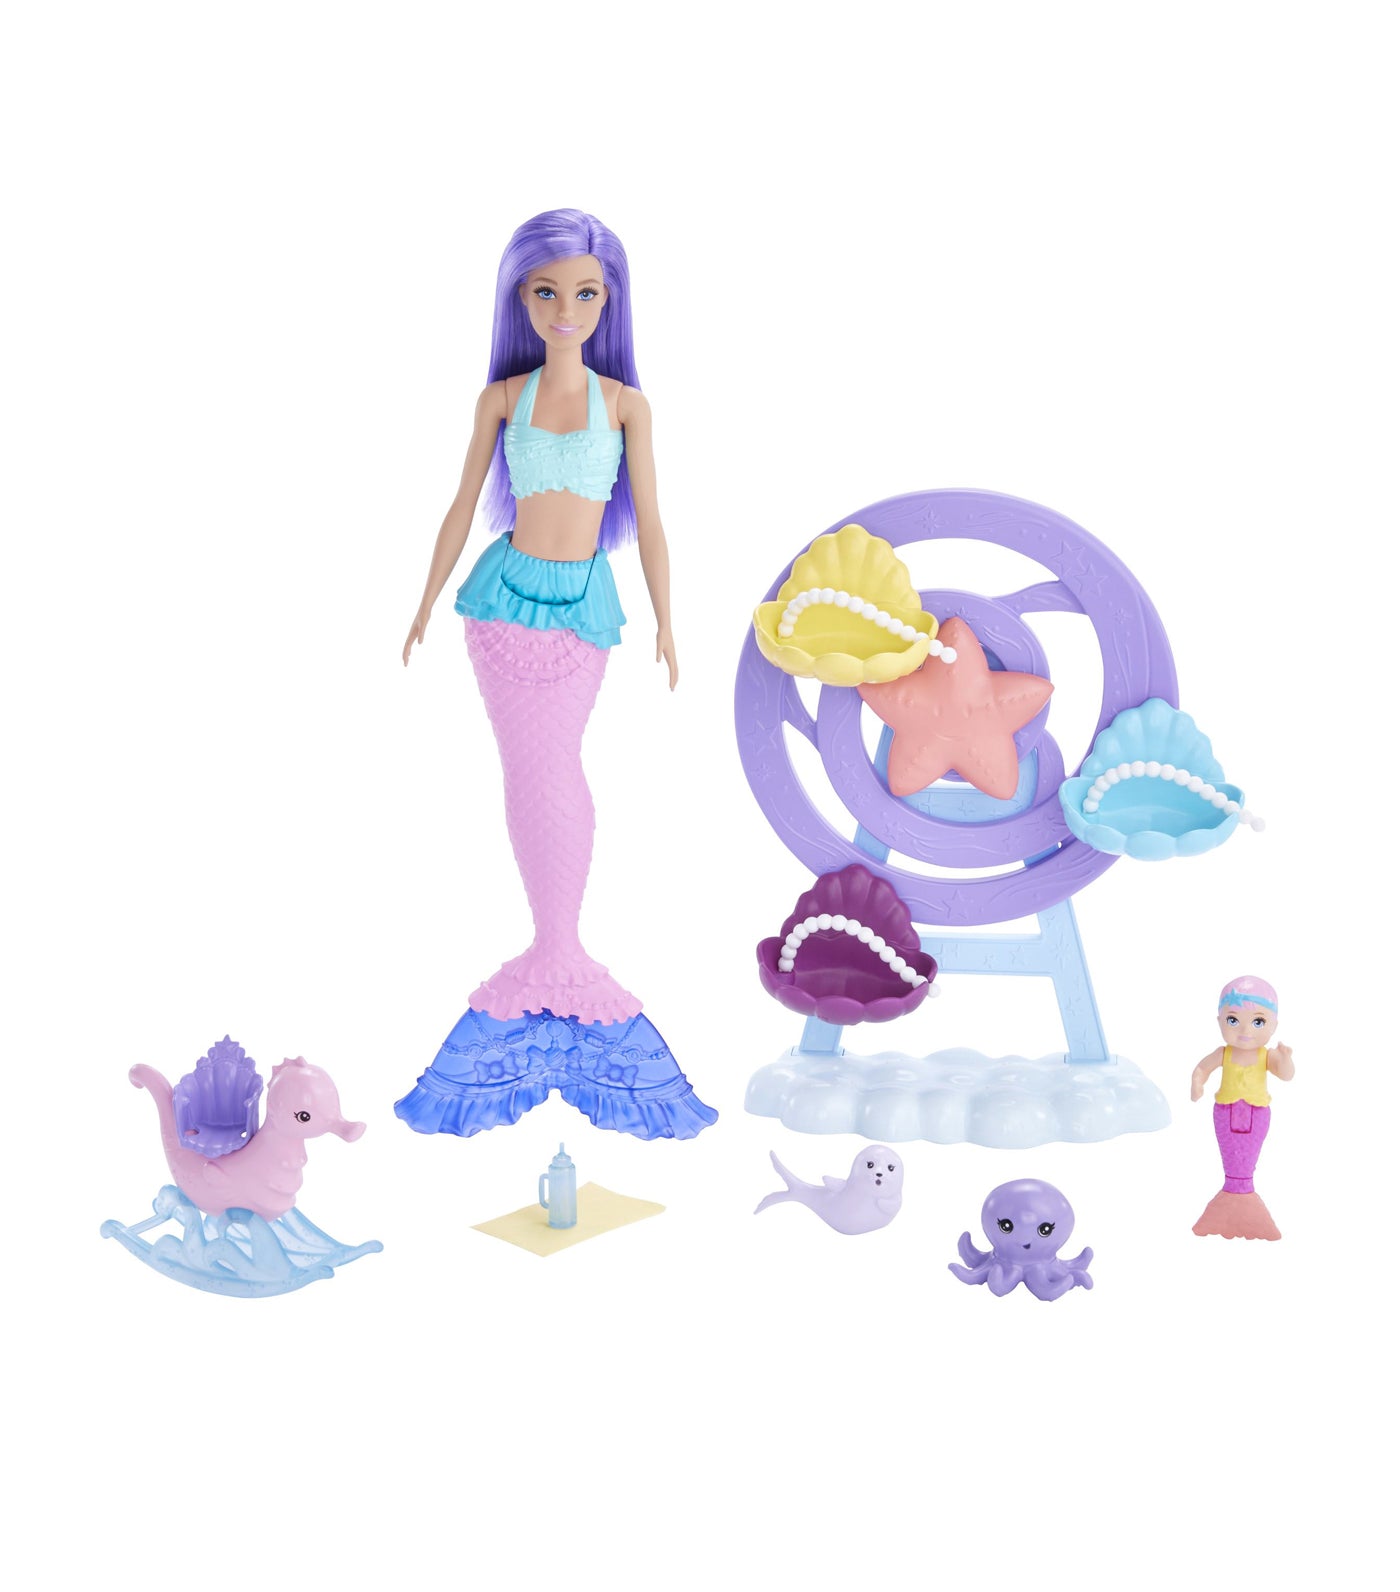 Dreamatopia Fairytale Nurturing Mermaid Playset